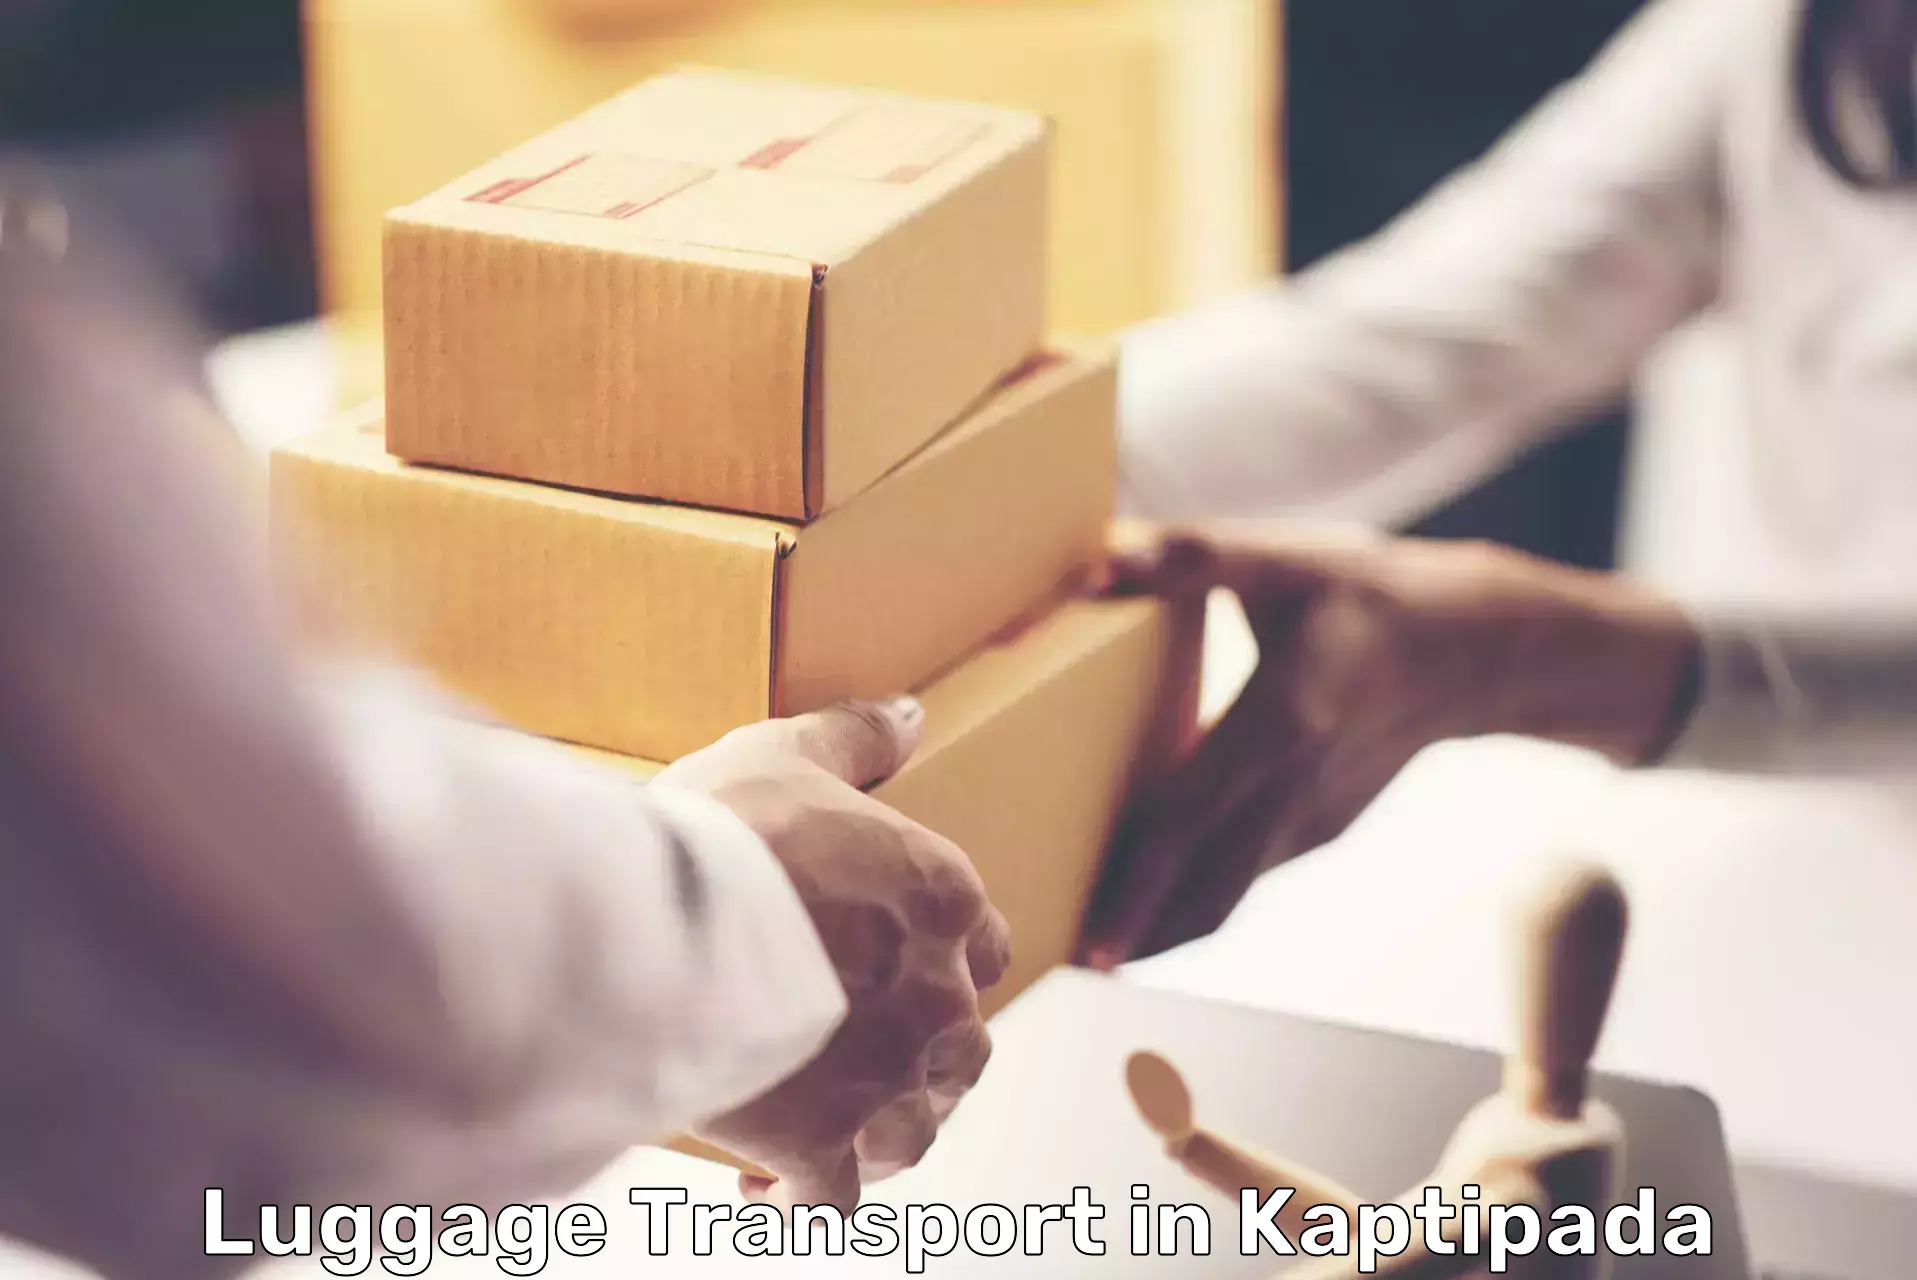 Luggage shipping service in Kaptipada